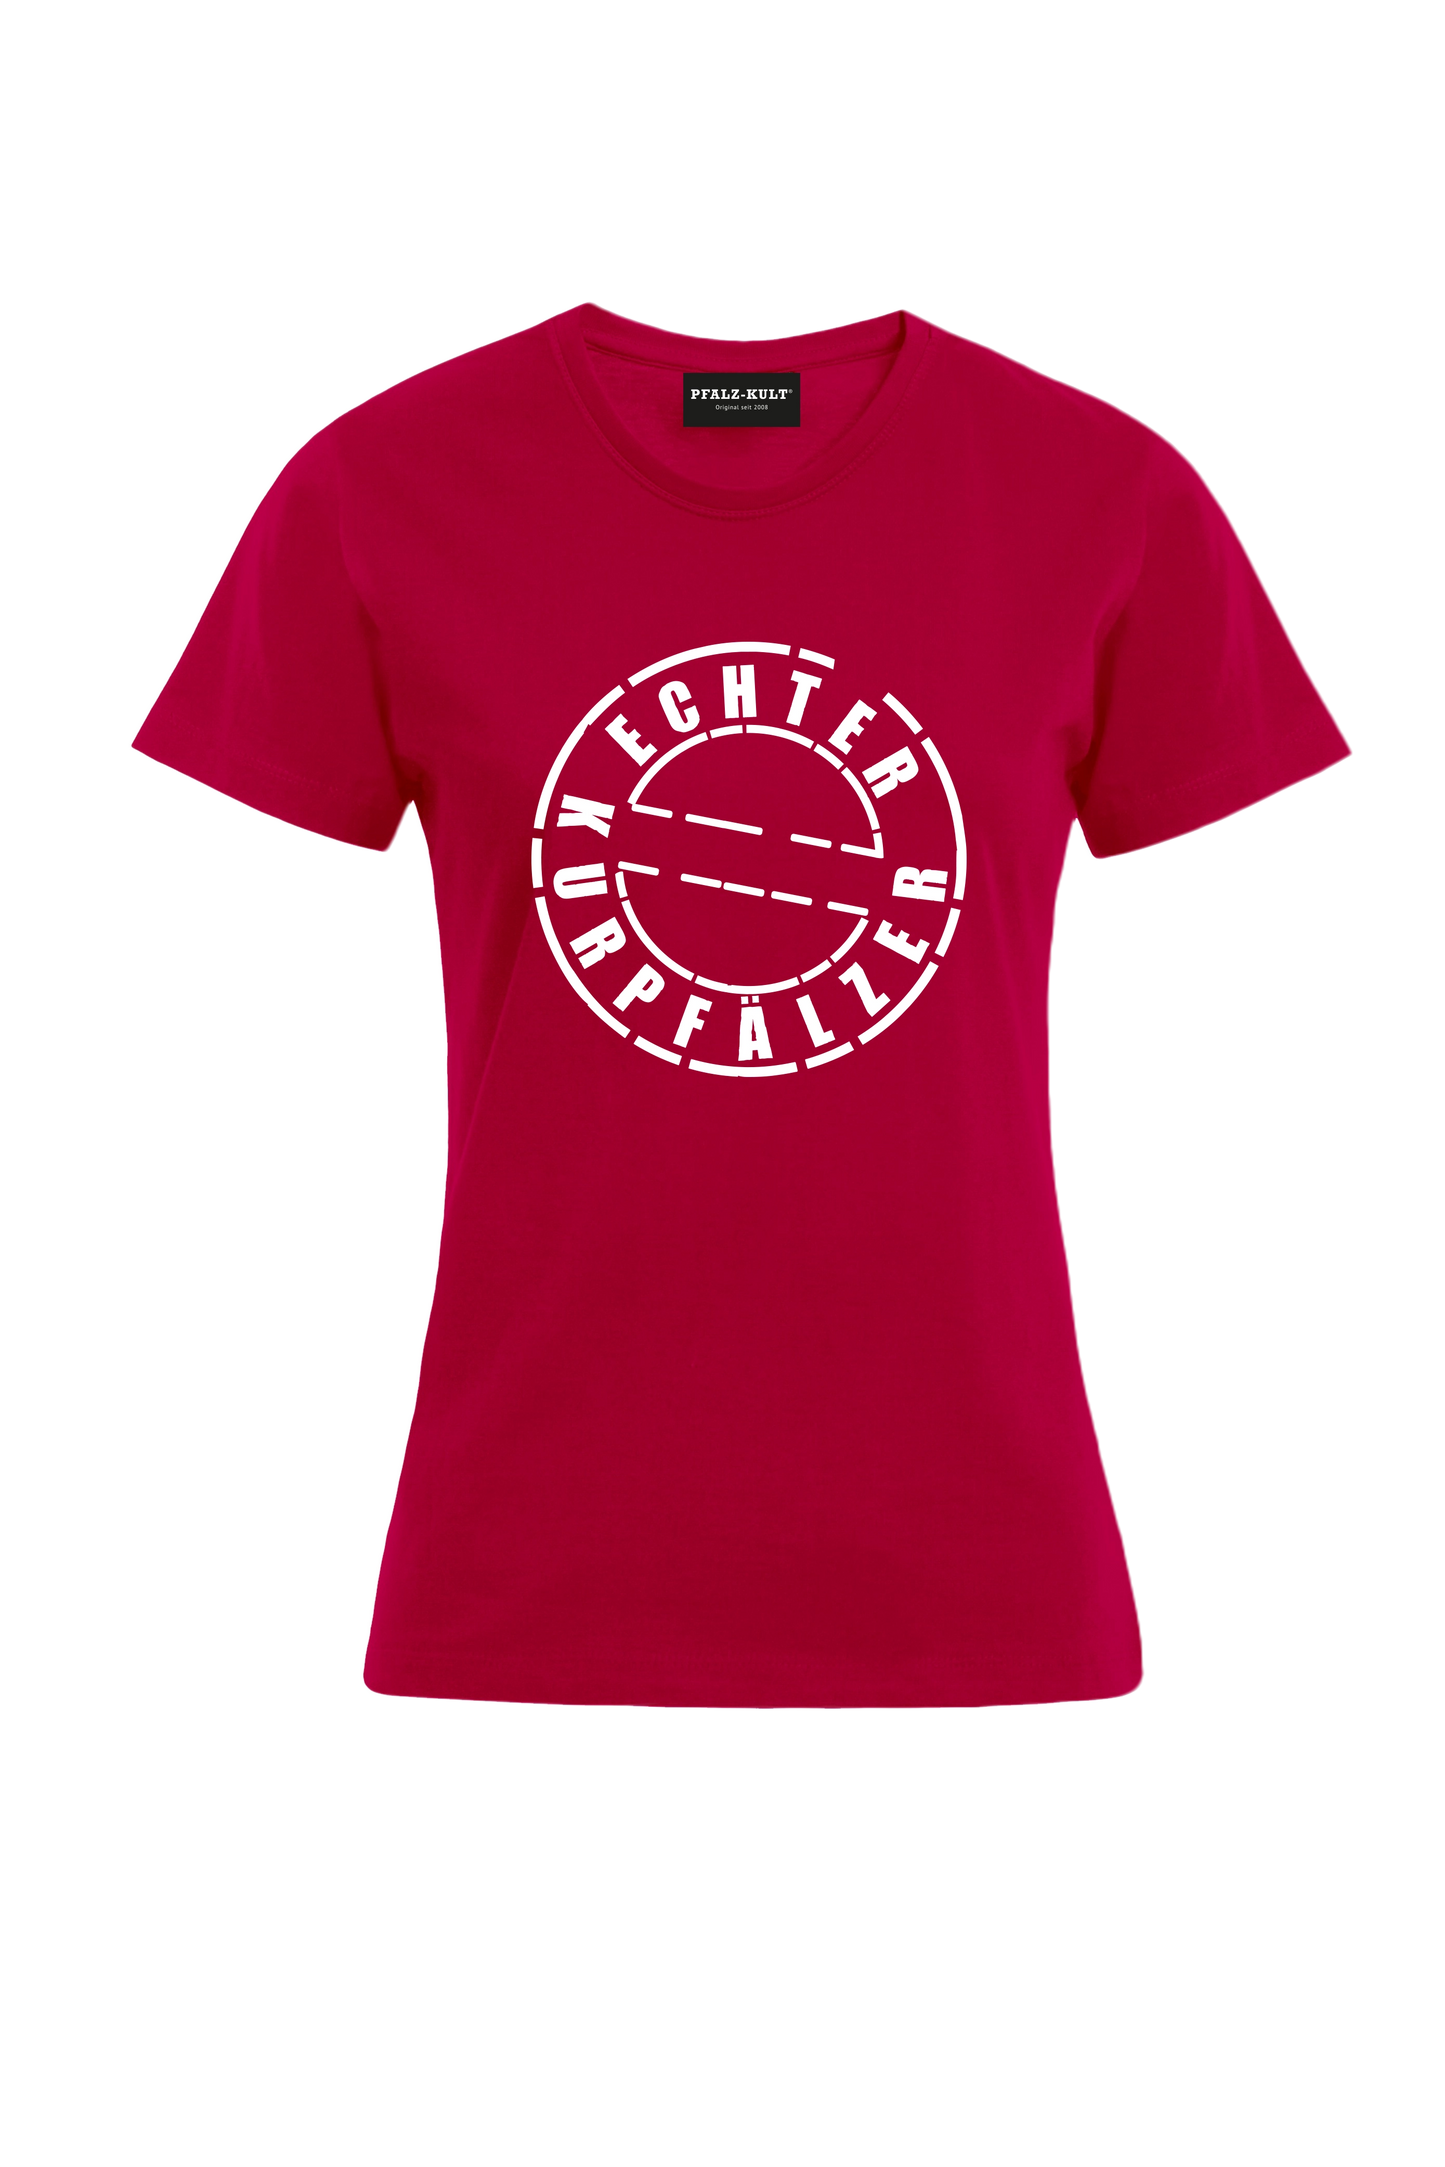 Rotes Damen T-Shirt mit dem Aufdruck "Echter Kurpfälzer" von Pfalz-Kult. Trendige Mode aus der Pfalz für Pälzr.